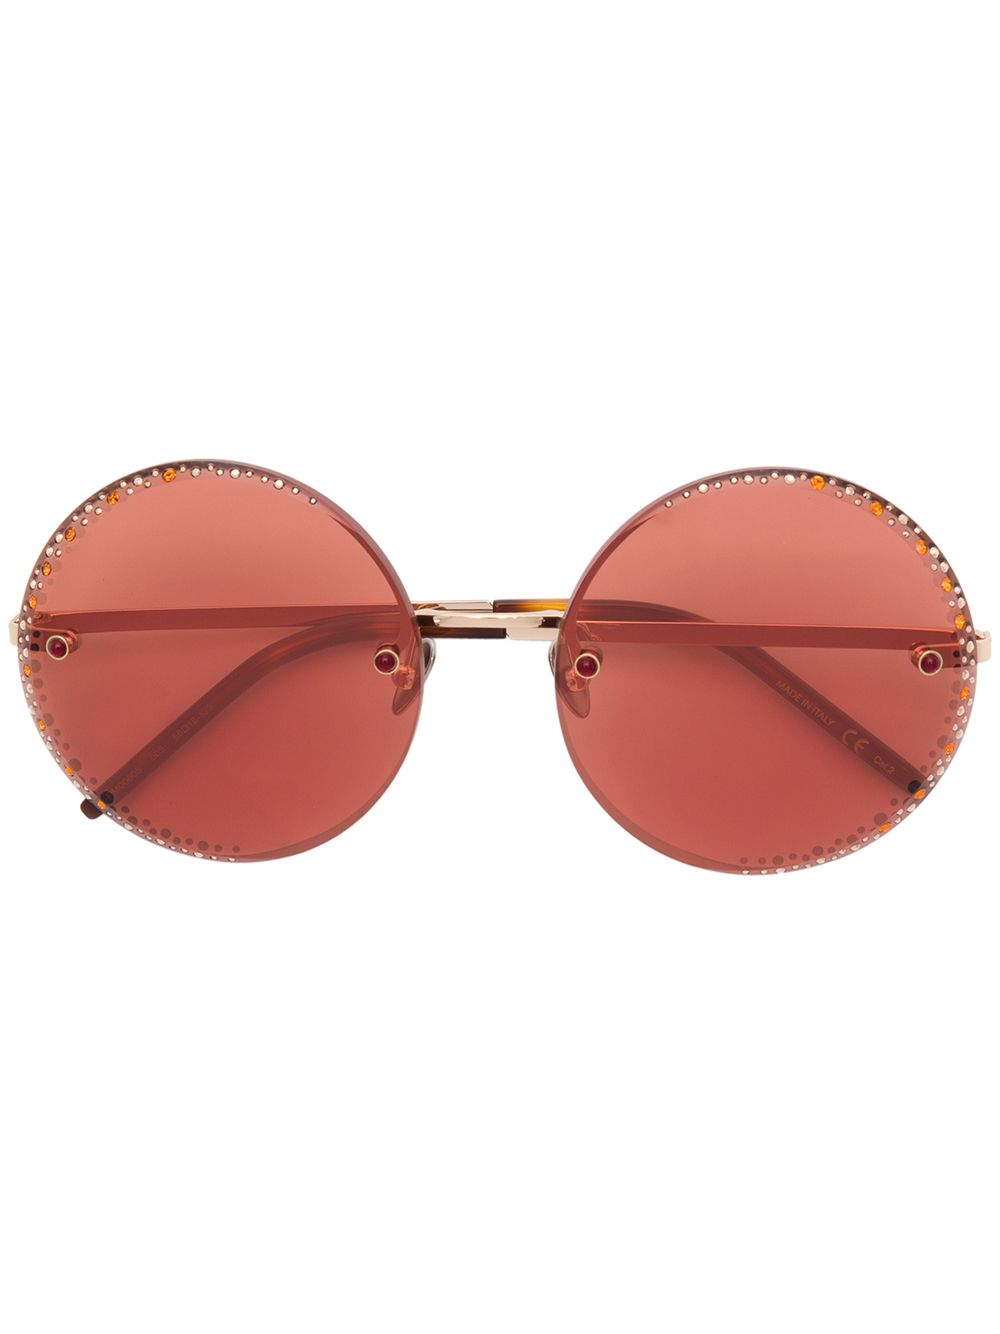 фото Pomellato eyewear круглые солнцезащитные очки с отделкой стразами